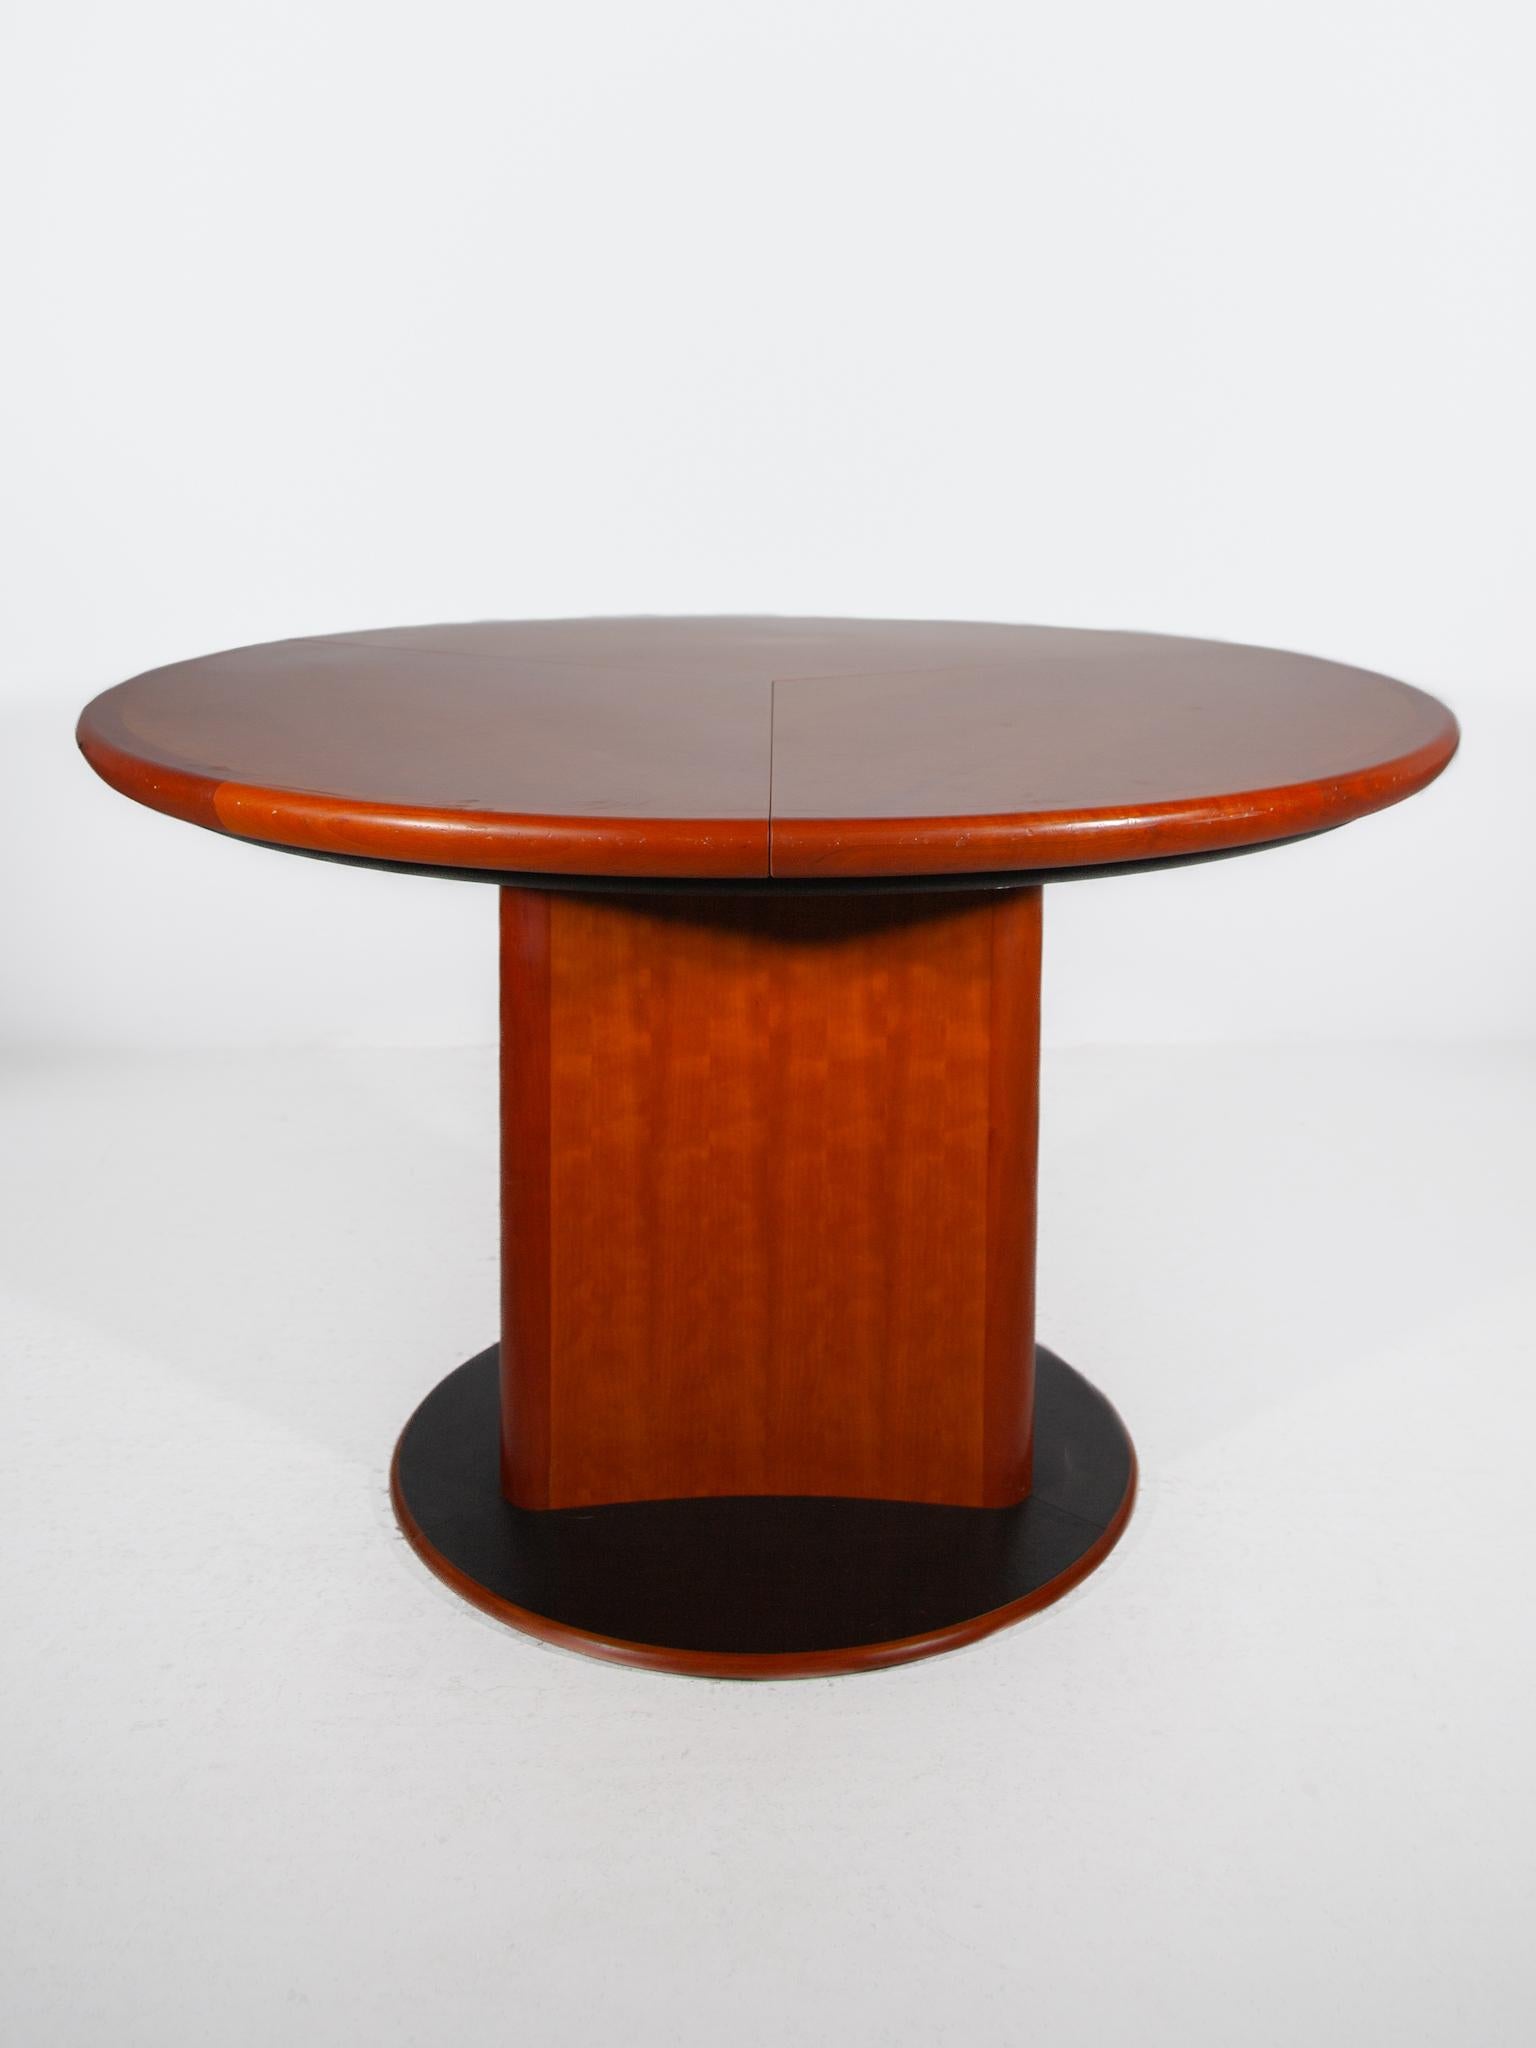 Magnifique table de salle à manger ronde conçue par Skovby en 1988 Modèle dc06, Construite en bois de teck, la table se caractérise par une base triangulaire incurvée et un plateau rond. Les trois feuilles de la table sont tirées vers l'extérieur à